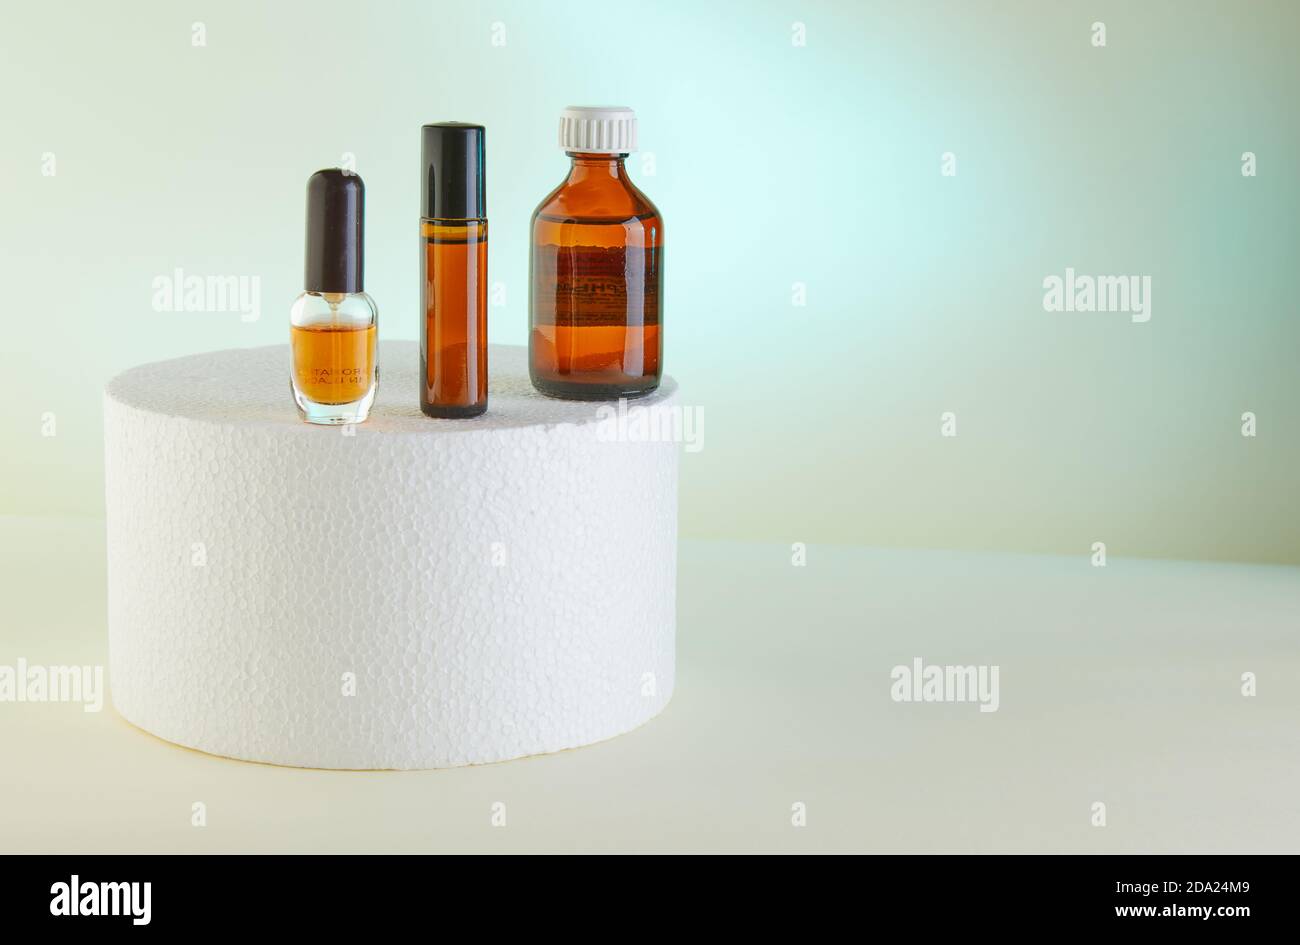 Dropper Bottle - Amber Glass of perfume, shower gel, unlabeled bottles on white podium. Stock Photo